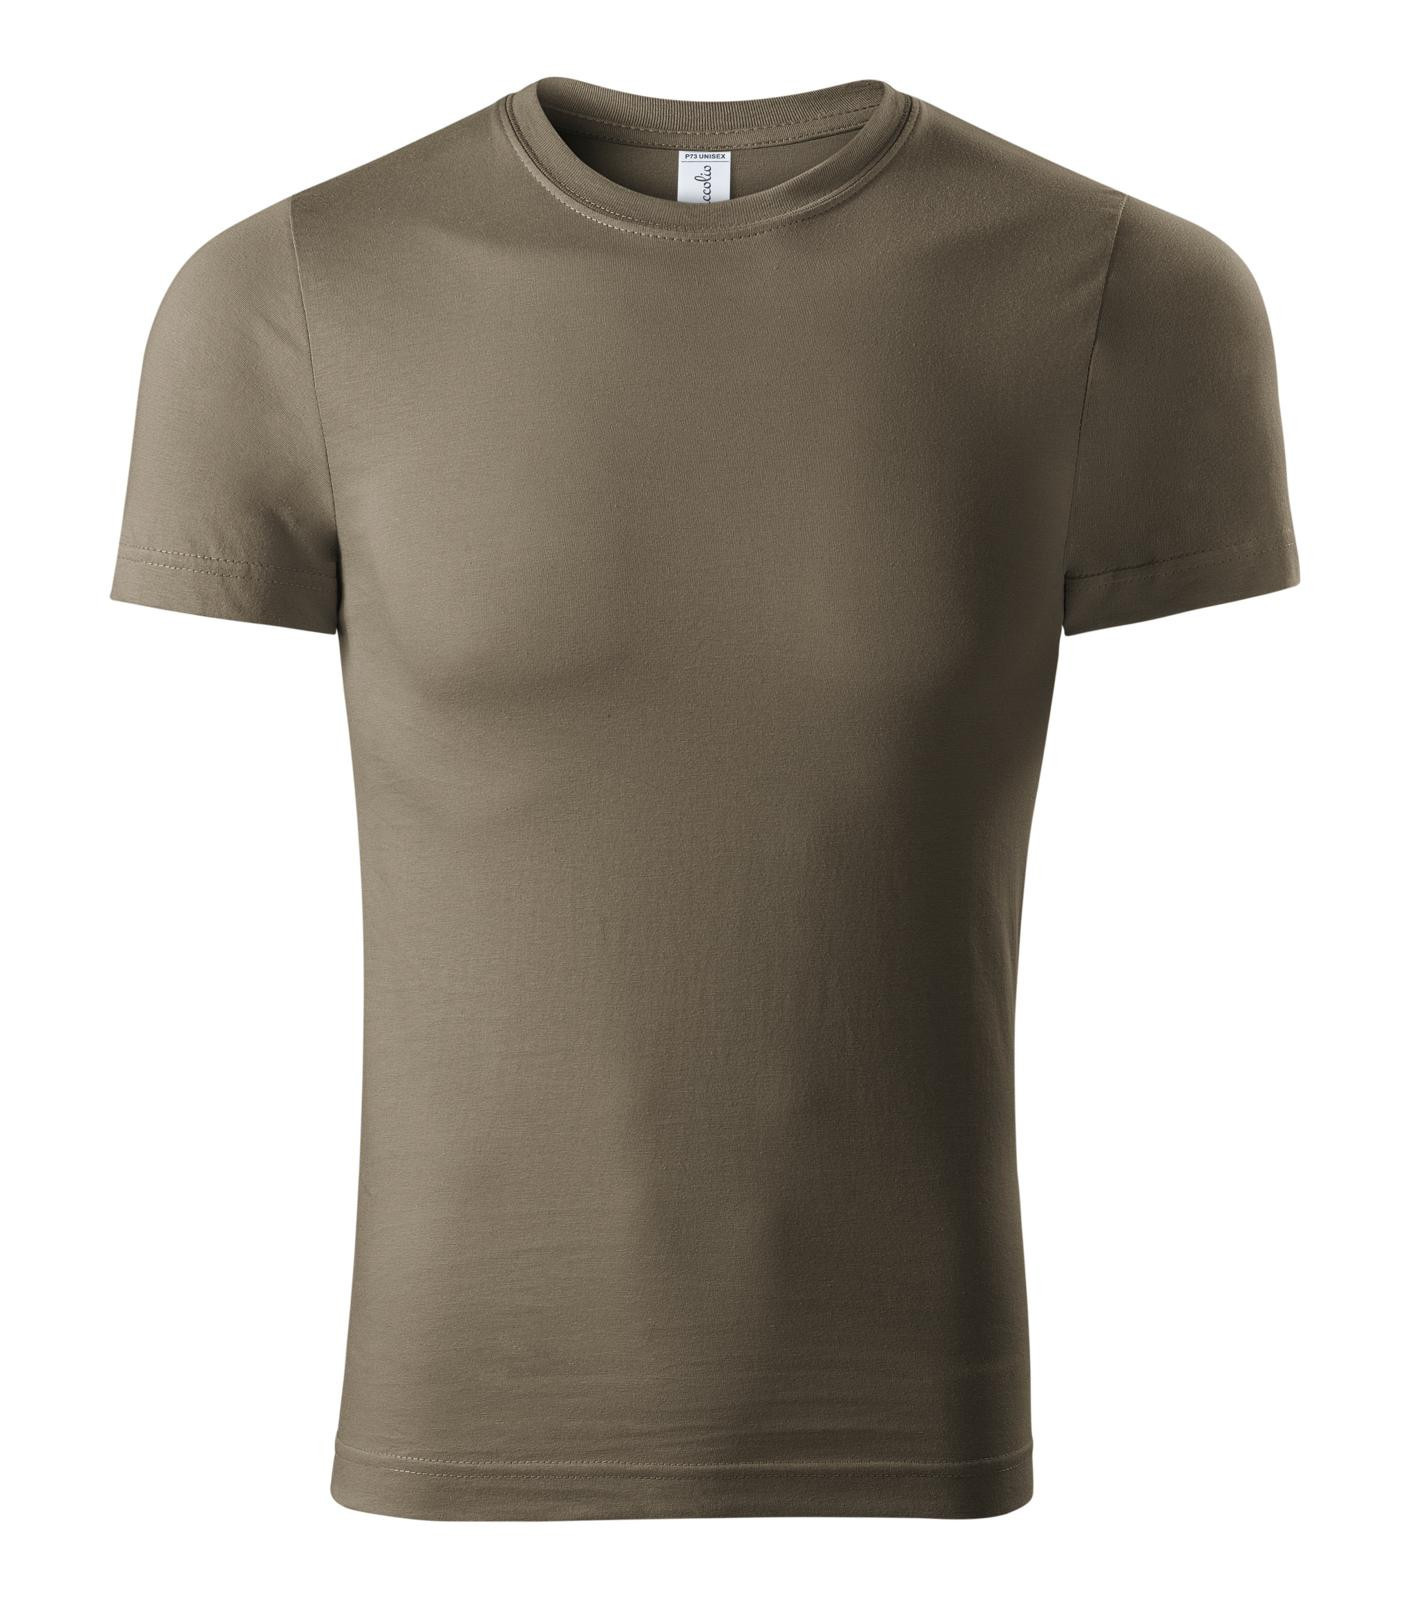 Unisex tričko Piccolio Paint P73 - veľkosť: L, farba: army